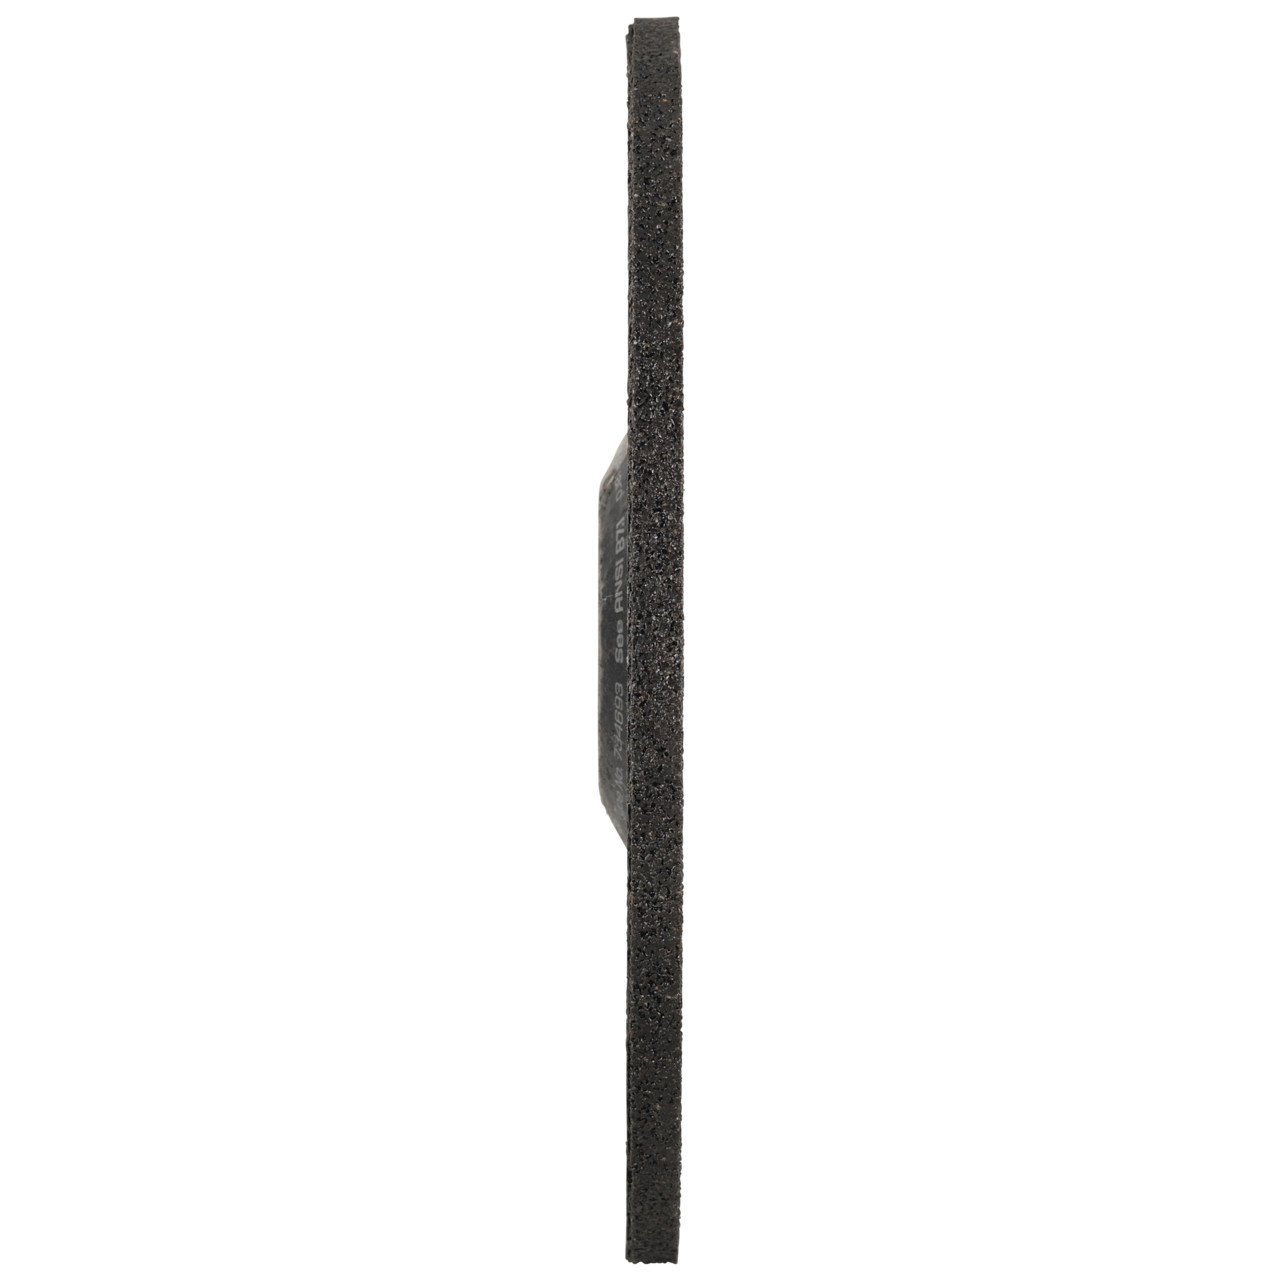 Tyrolit Grove slijpschijf DxUxH 178x6x22,23 FASTCUT Basic voor staal en roestvast staal, vorm: 27C - offset uitvoering, Art. 34468719